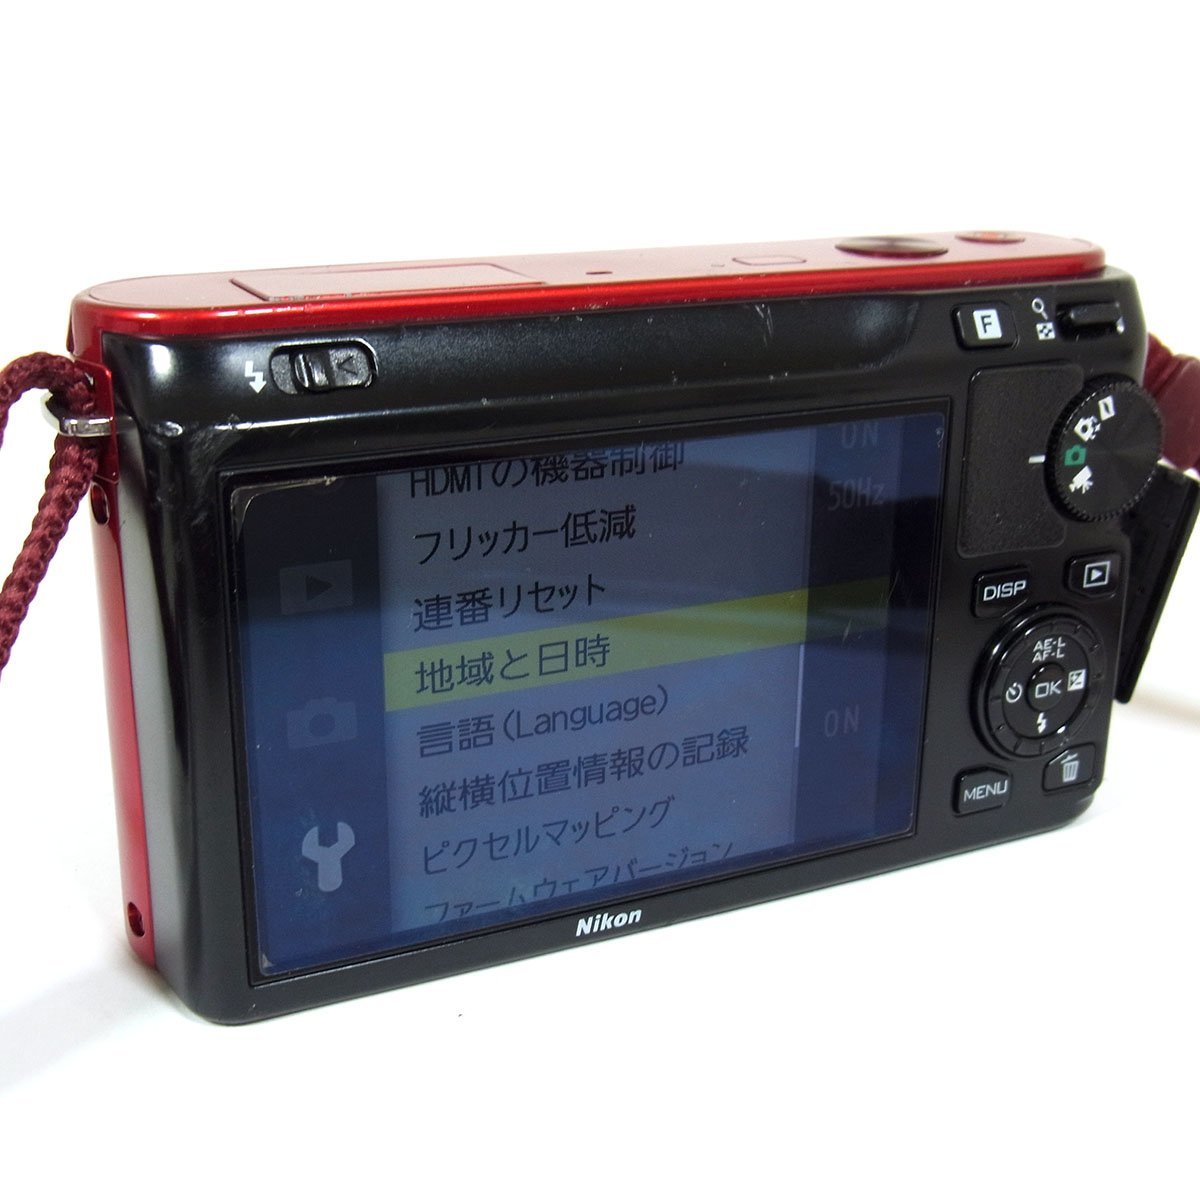 ニコン 1 J1 デジタルカメラ レッド レンズ10mm 1:2.8 通電 動作確認済み 訳アリ品 付属品 Nikon ◆_画像5